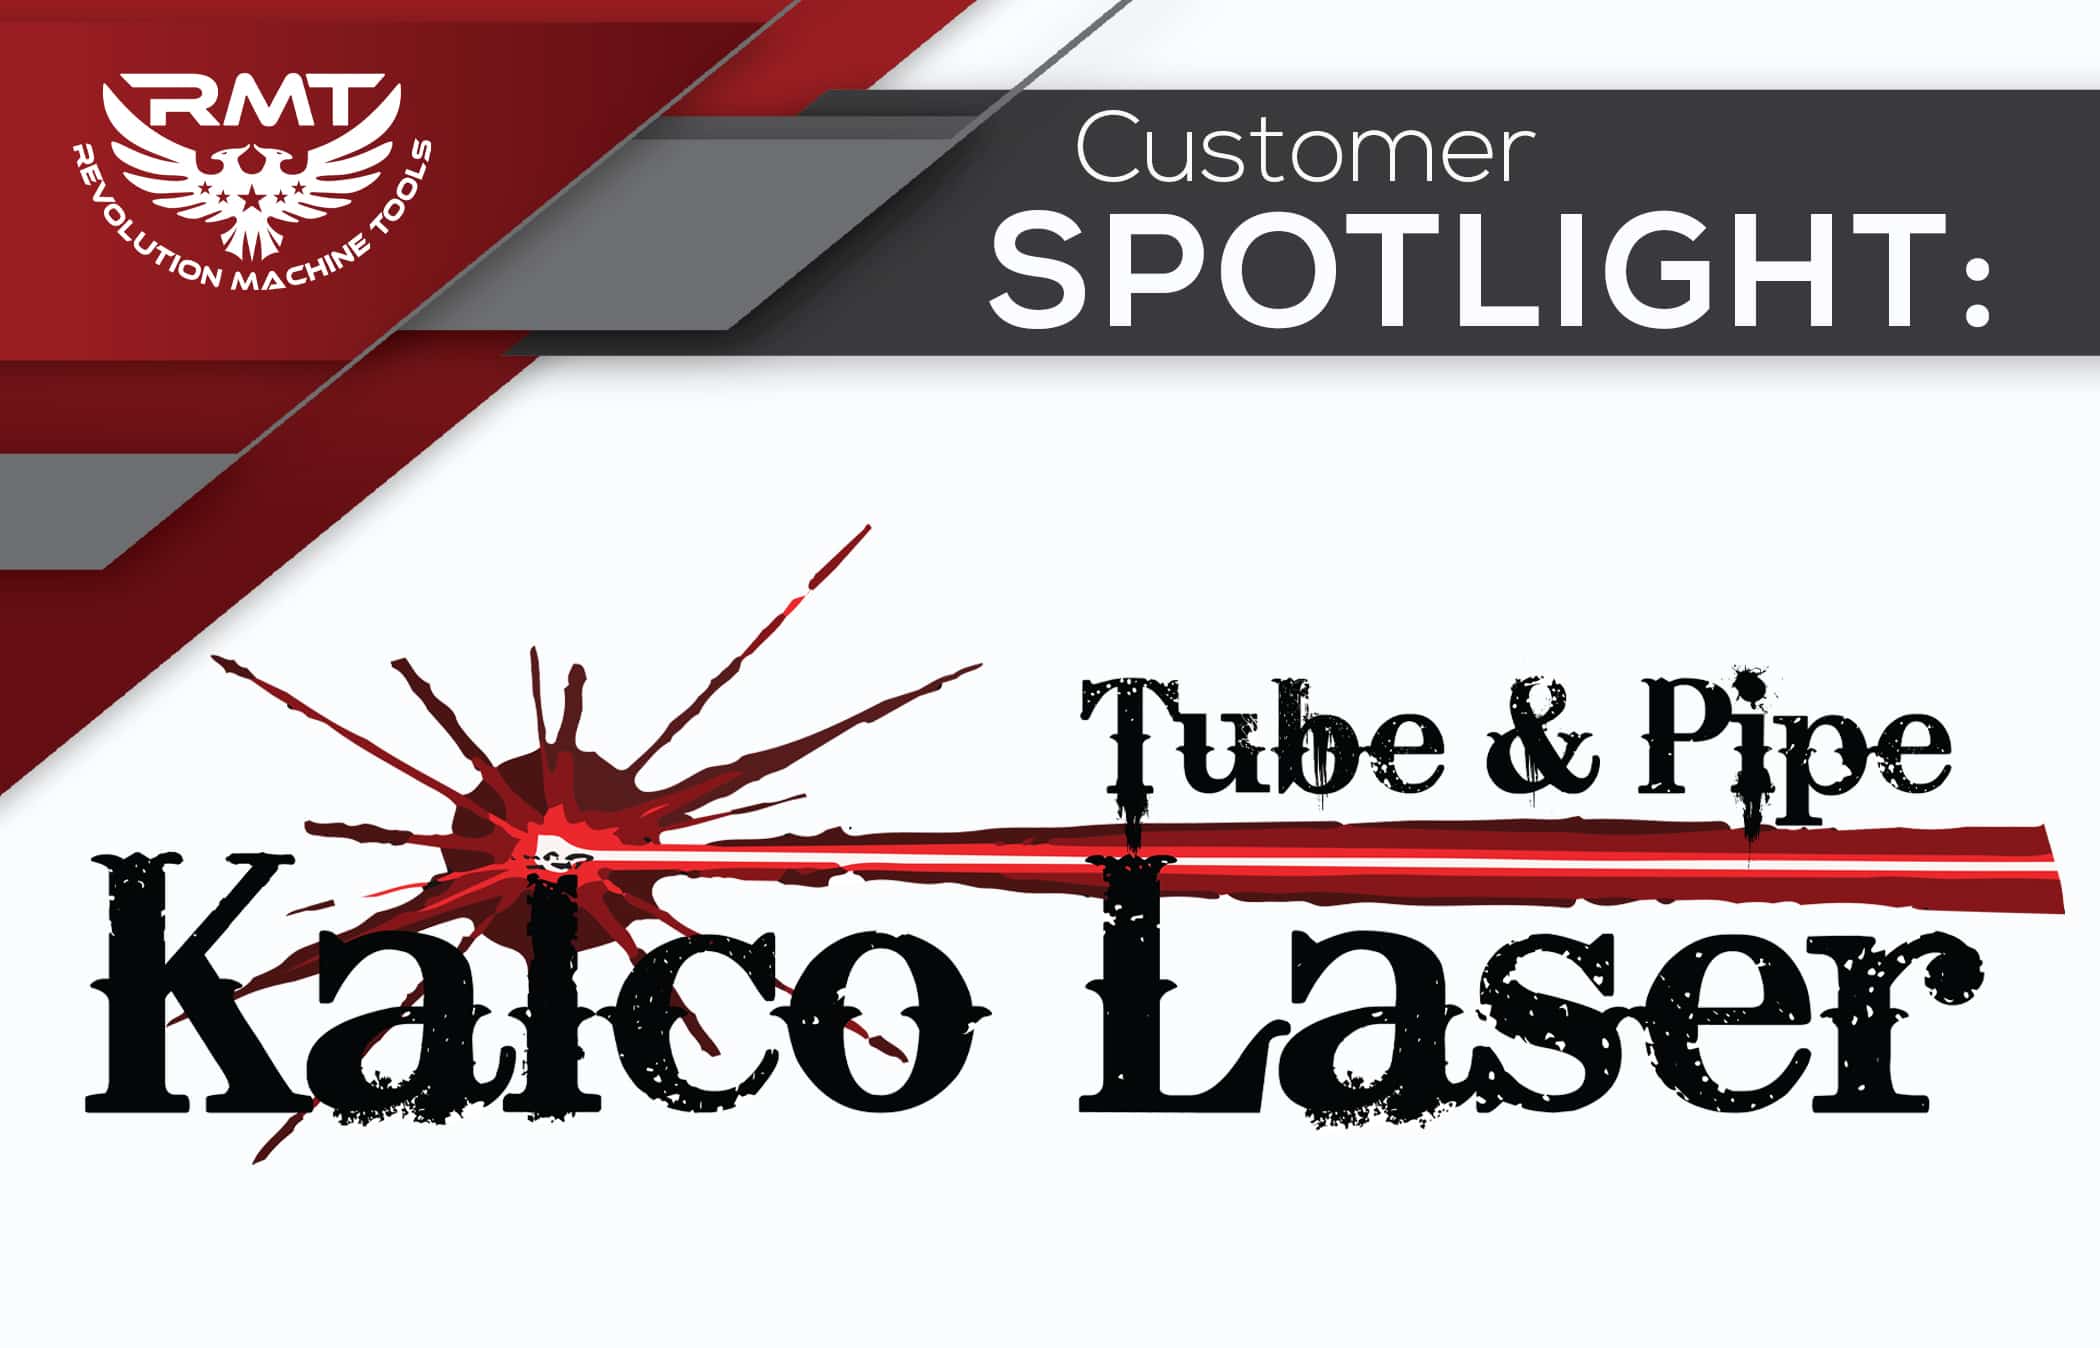 Kalco laser customer spotlight